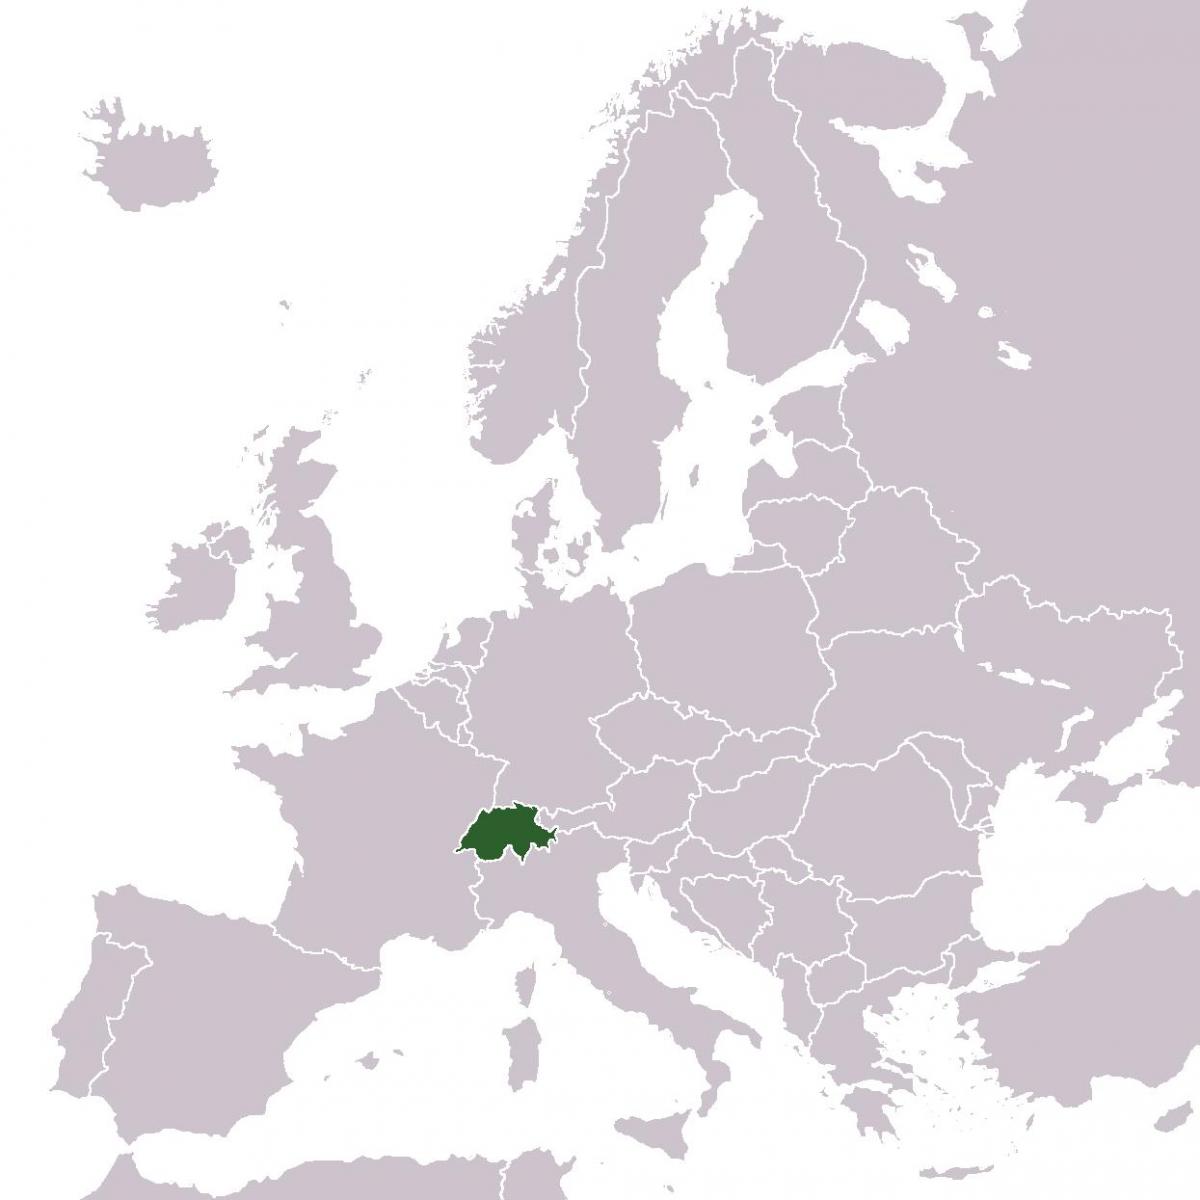 šveice vieta eiropā karte